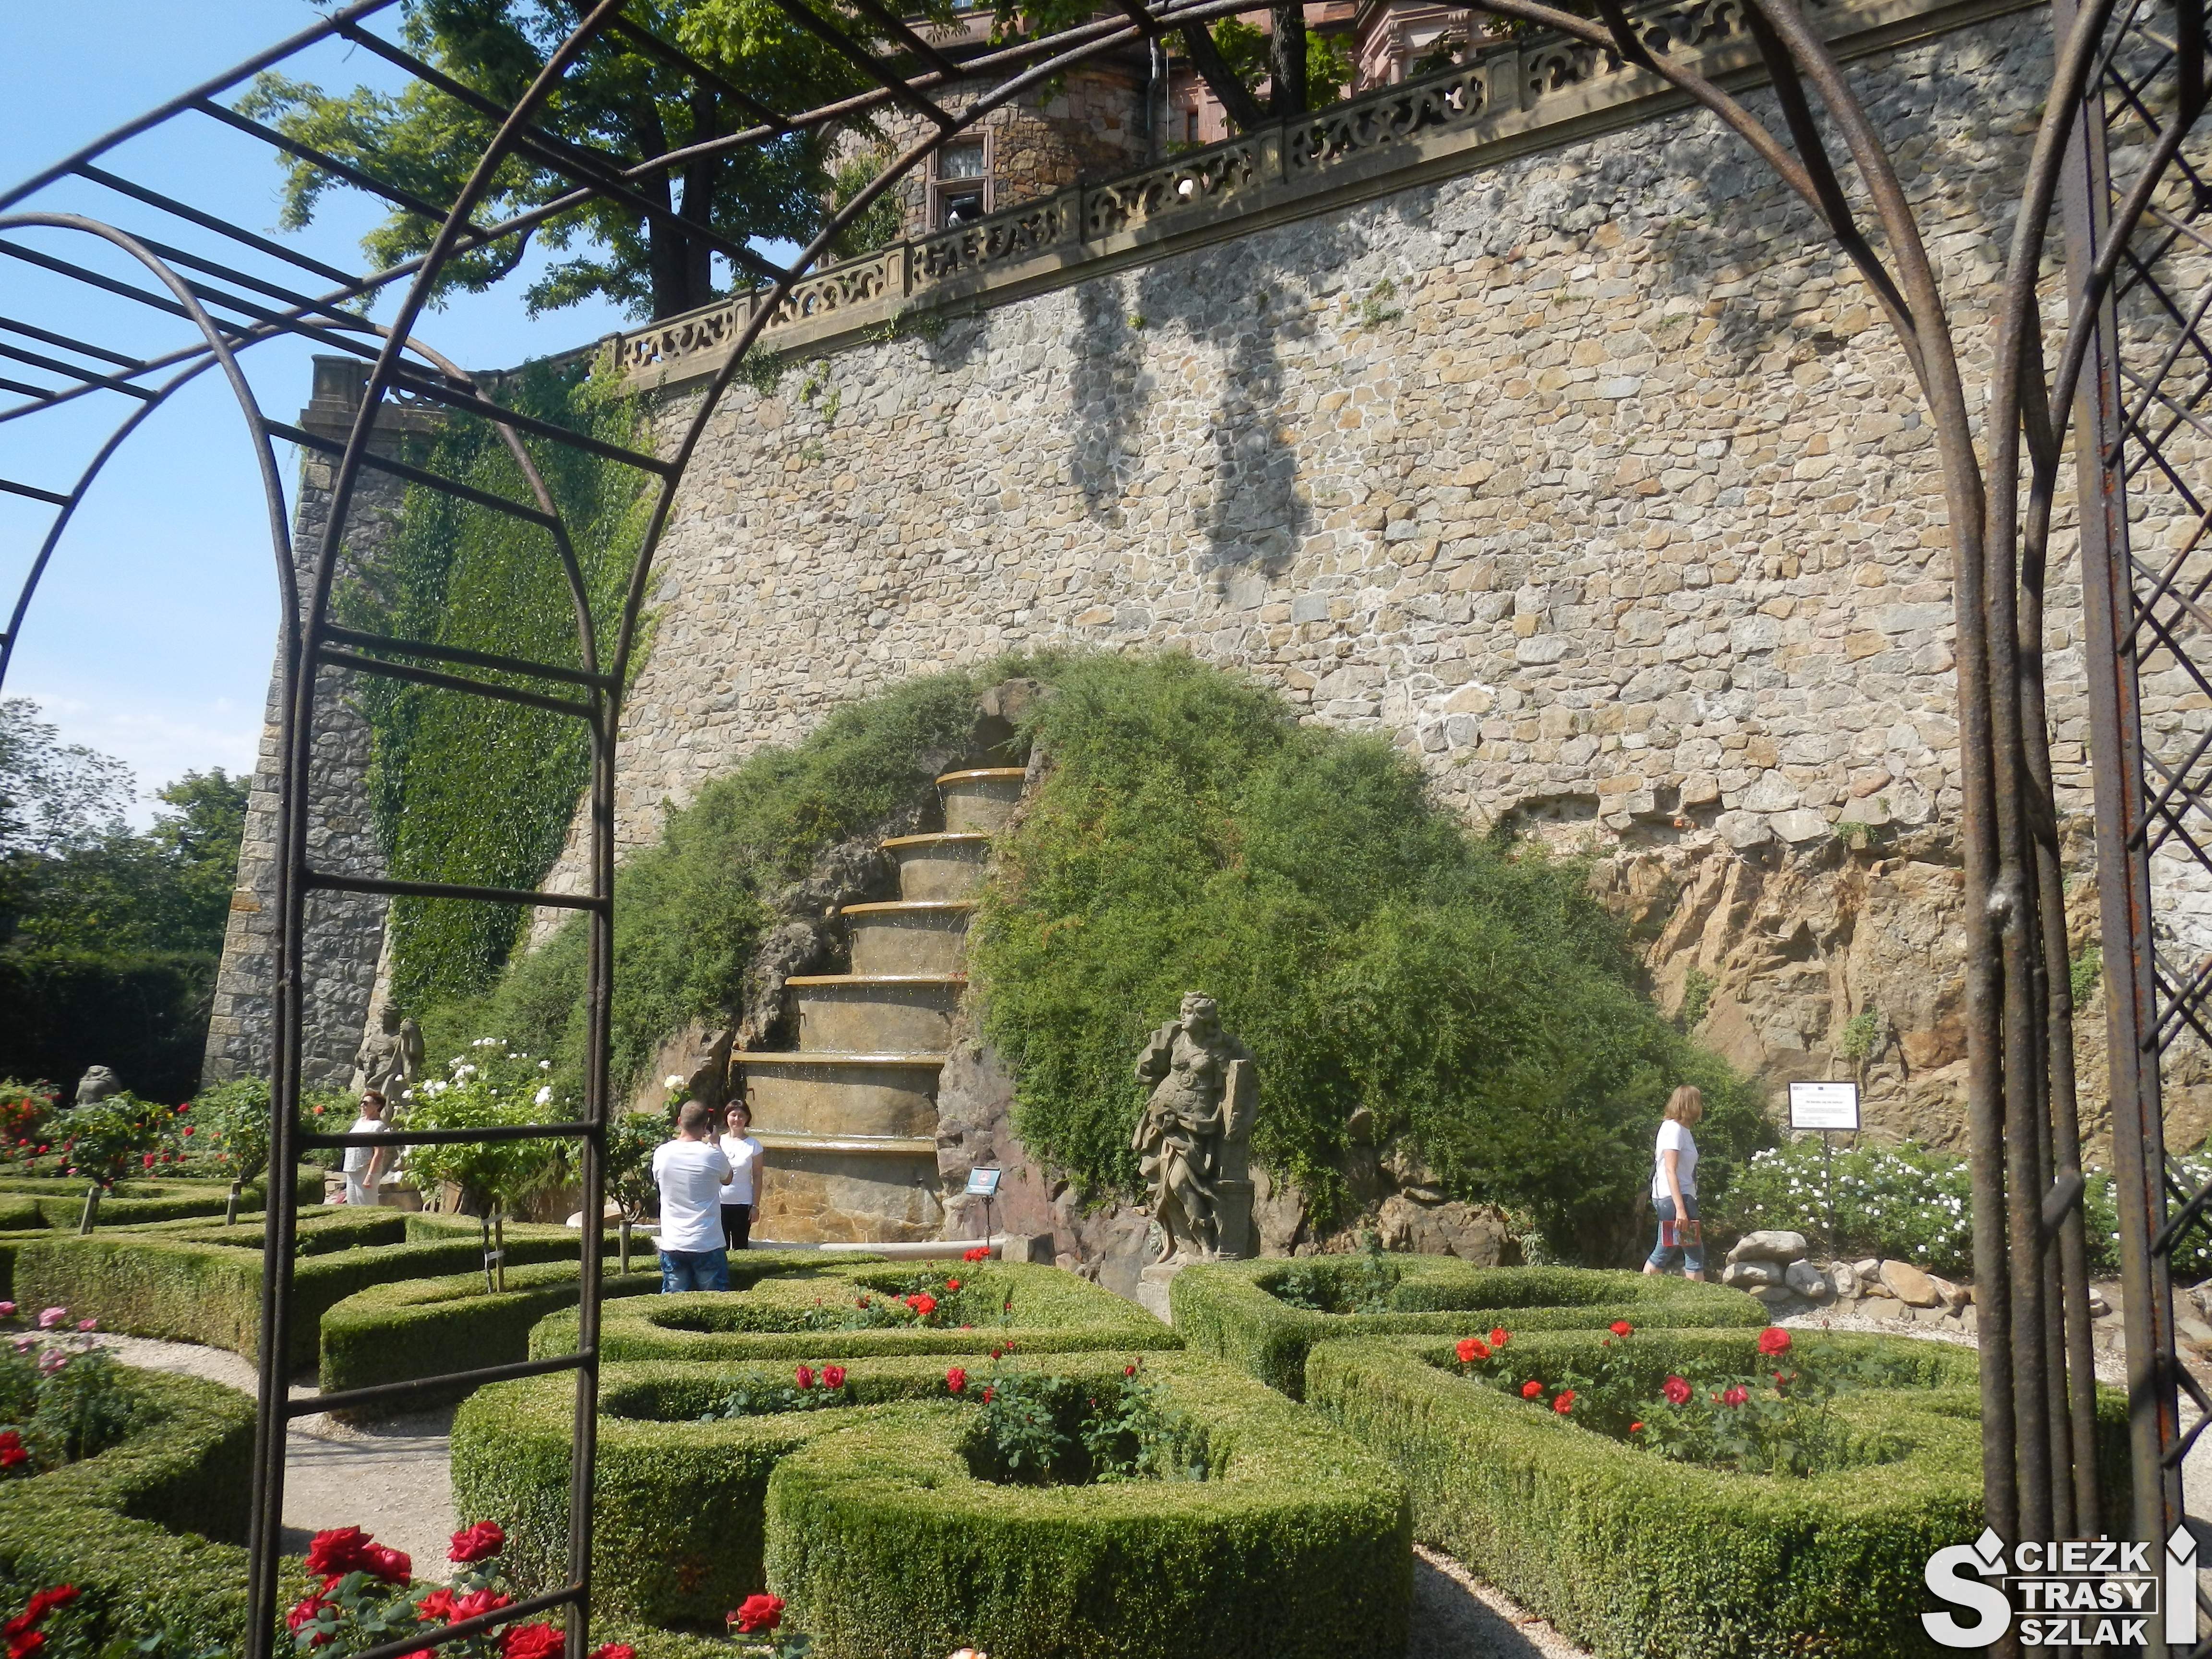 Wspaniałe rabaty kwiatowe w kształcie koła, serca przy fontannie i greckich pomnikach w ogrodach królewskich